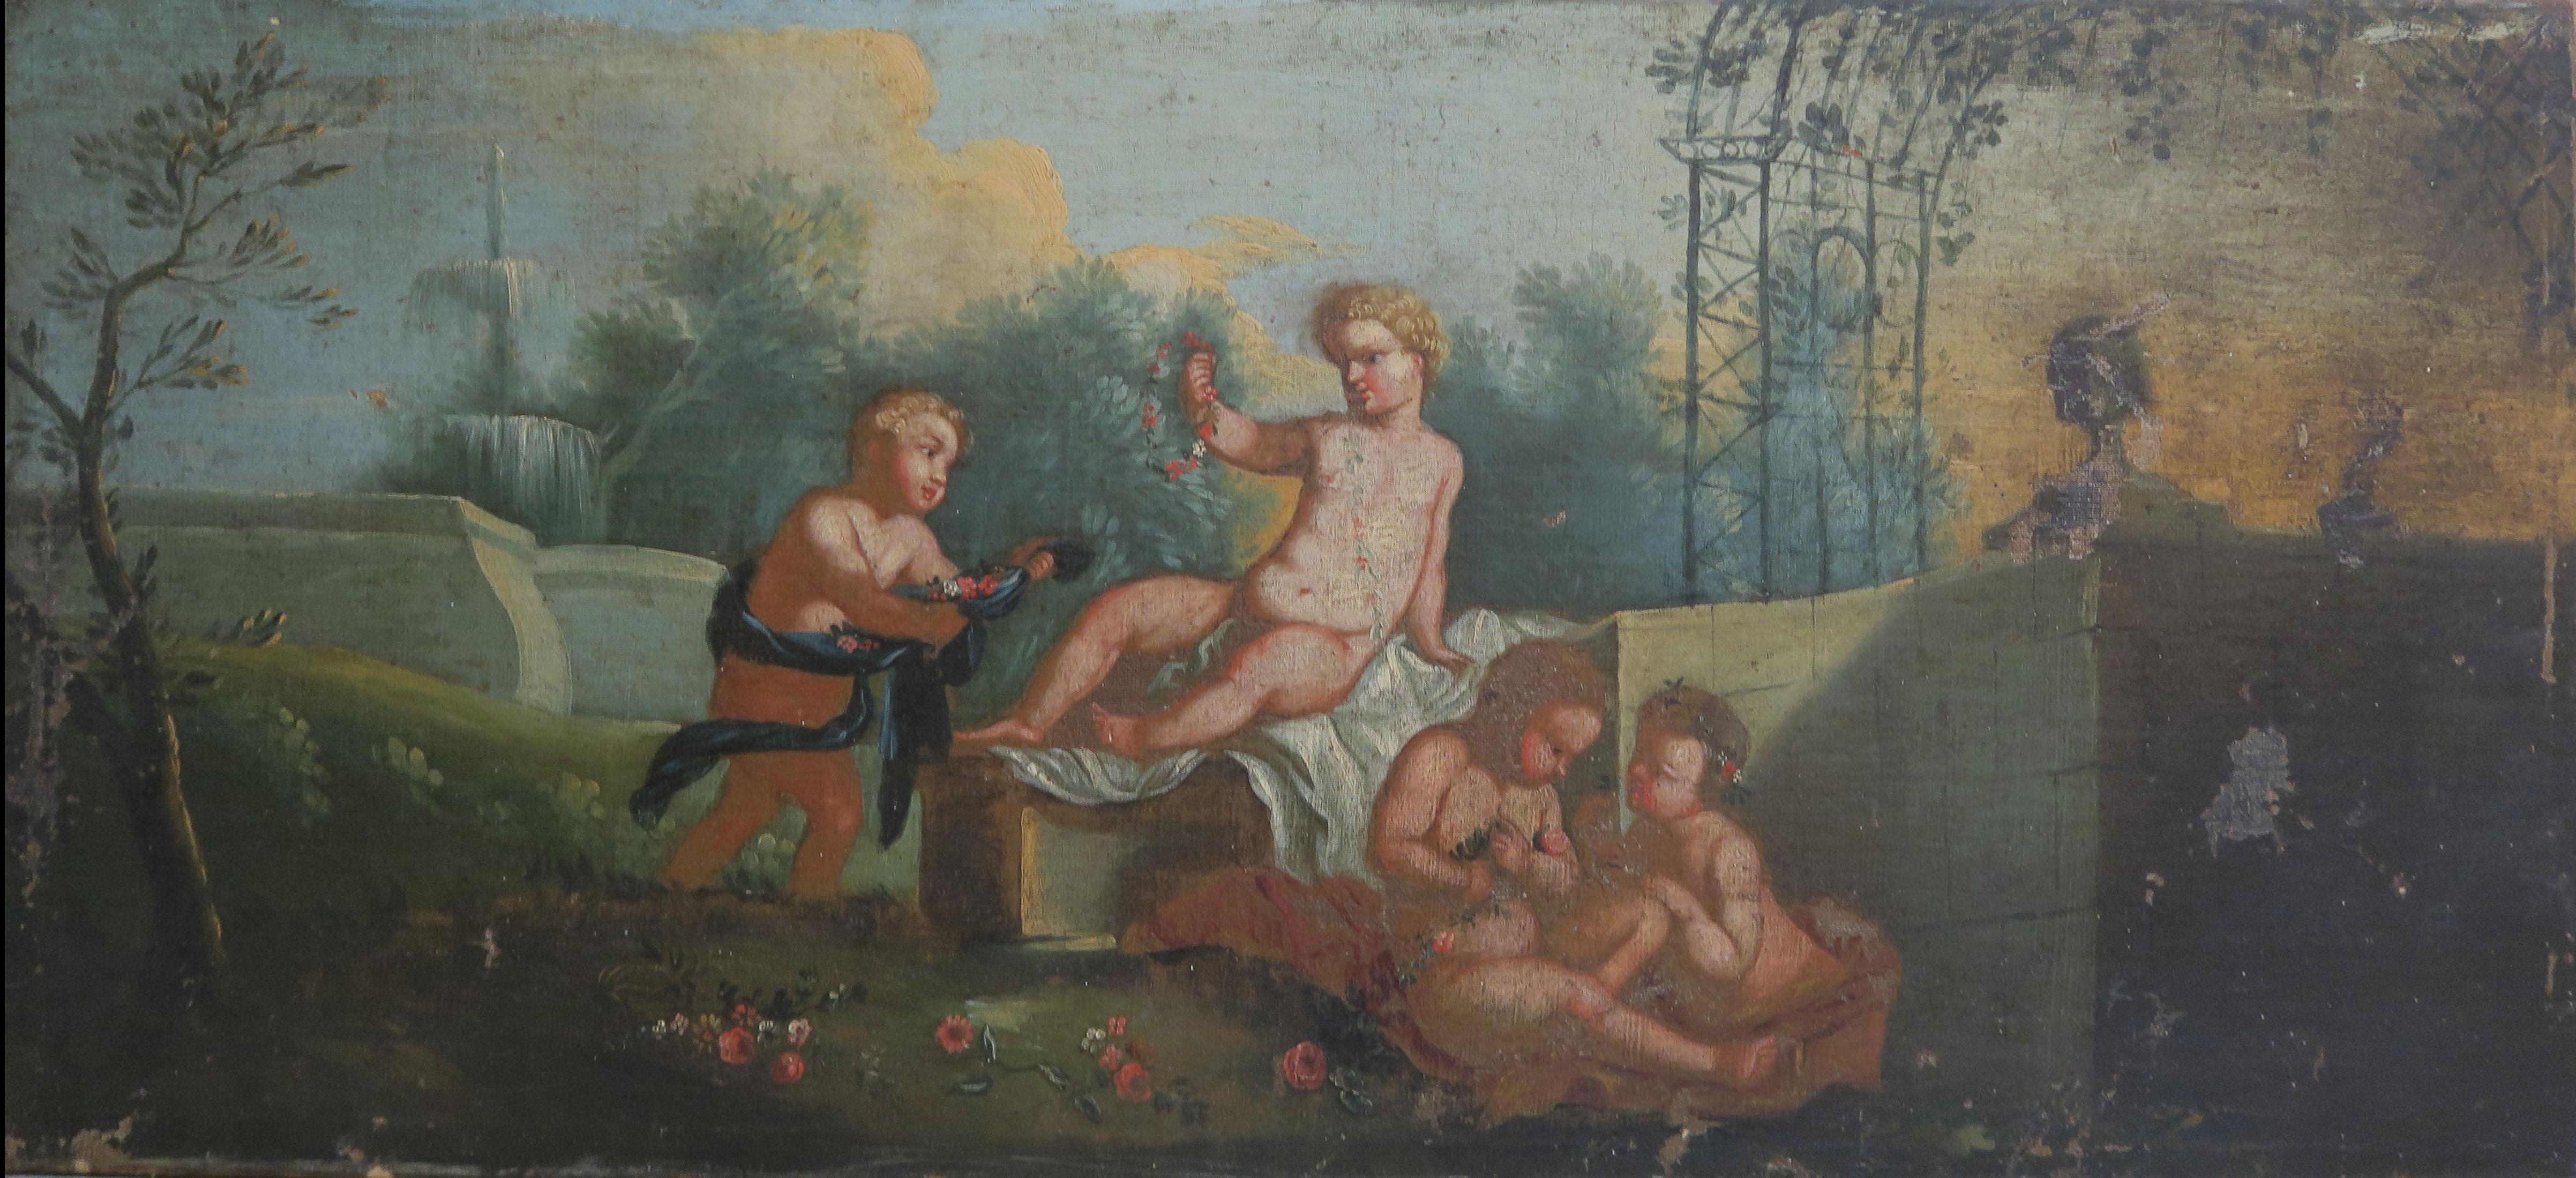 Charmante huile sur toile représentant une scène où des putti s'ébattent dans un jardin. Le tableau a besoin d'une légère restauration comme le montrent les photos. Le tableau est entouré d'un magnifique cadre en bois doré.